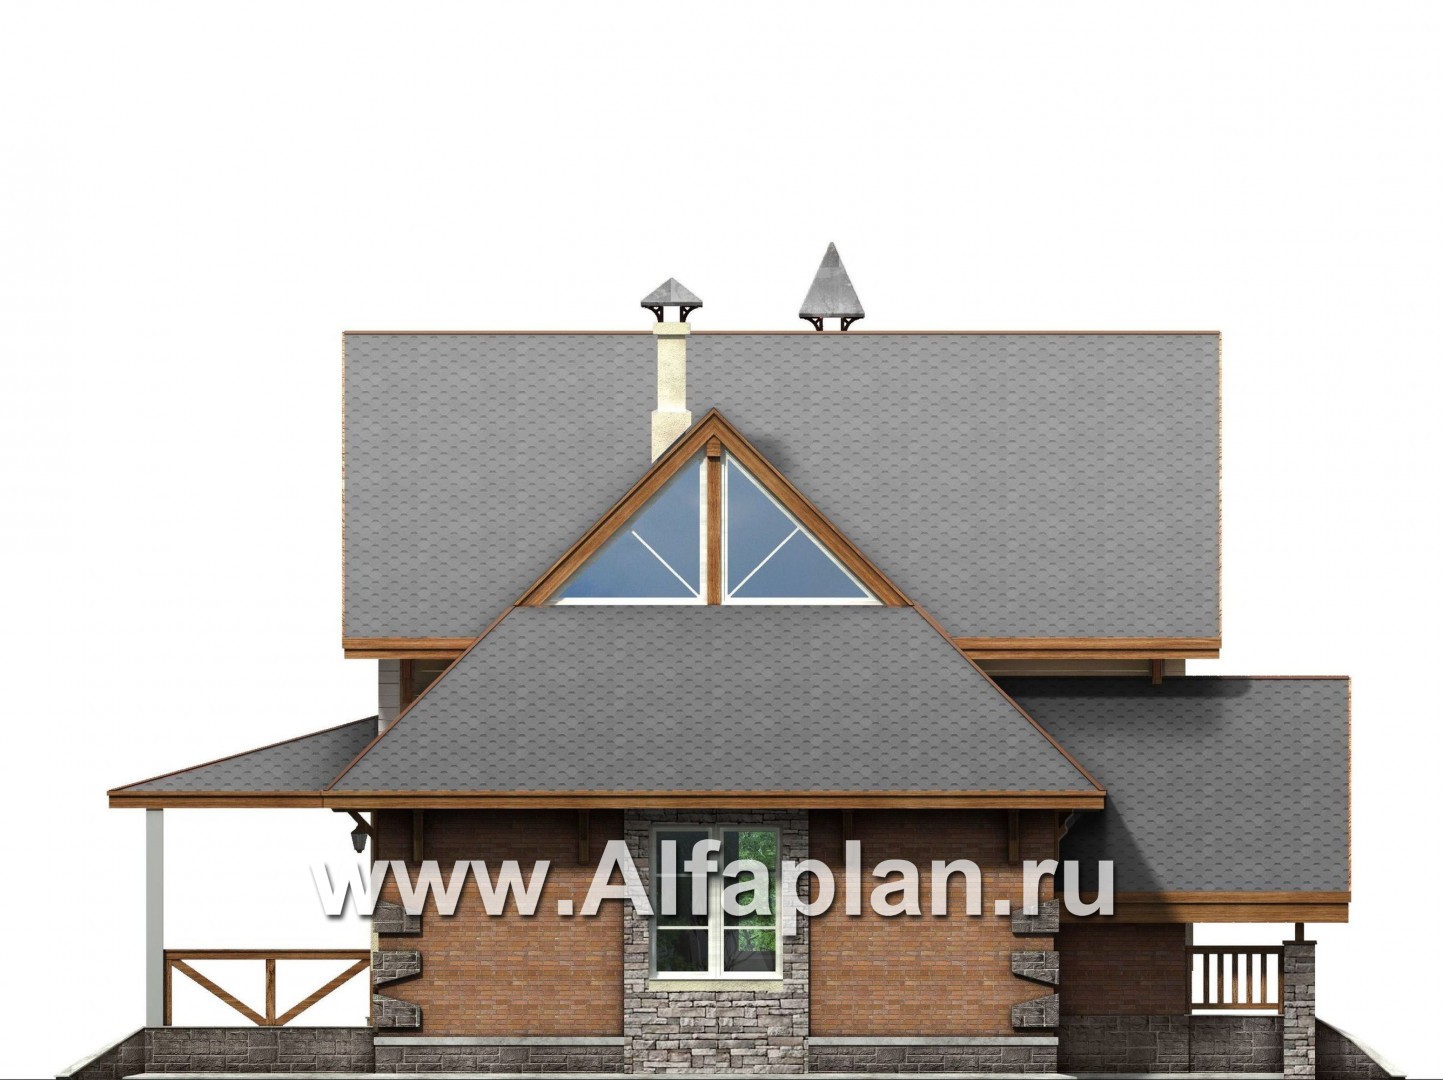 «Альпенхаус»- проект дома с мансардой, высокий потолок в гостиной, в стиле  шале, 1 эт из кирпича, 2 эт из бруса - фасад дома